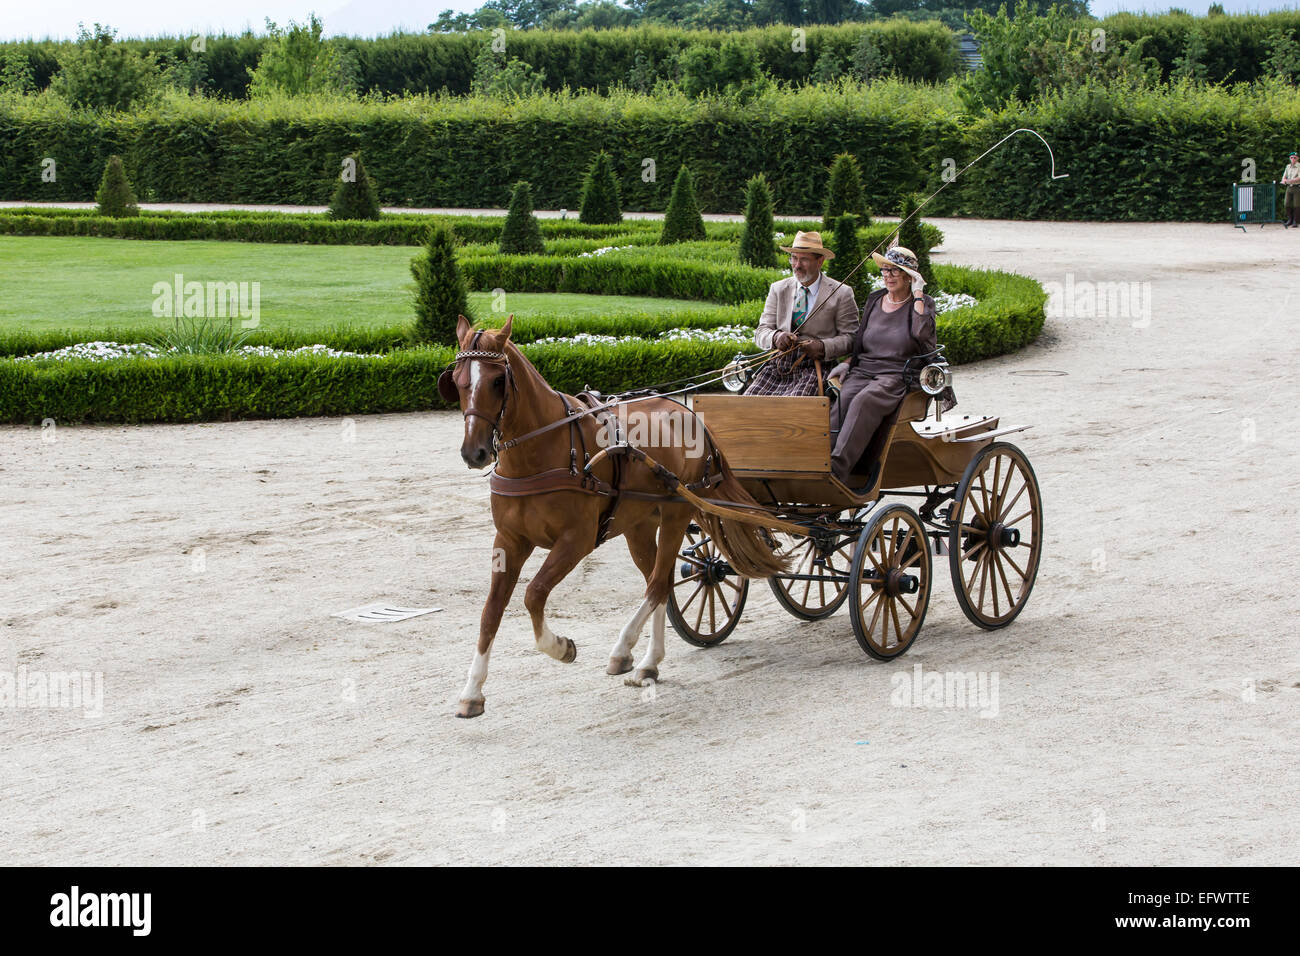 Concurso internacional de carruajes típicos 'La Venaria Reale', carro: Kloppbreak, caballo: solo Franches Montagnes Foto de stock